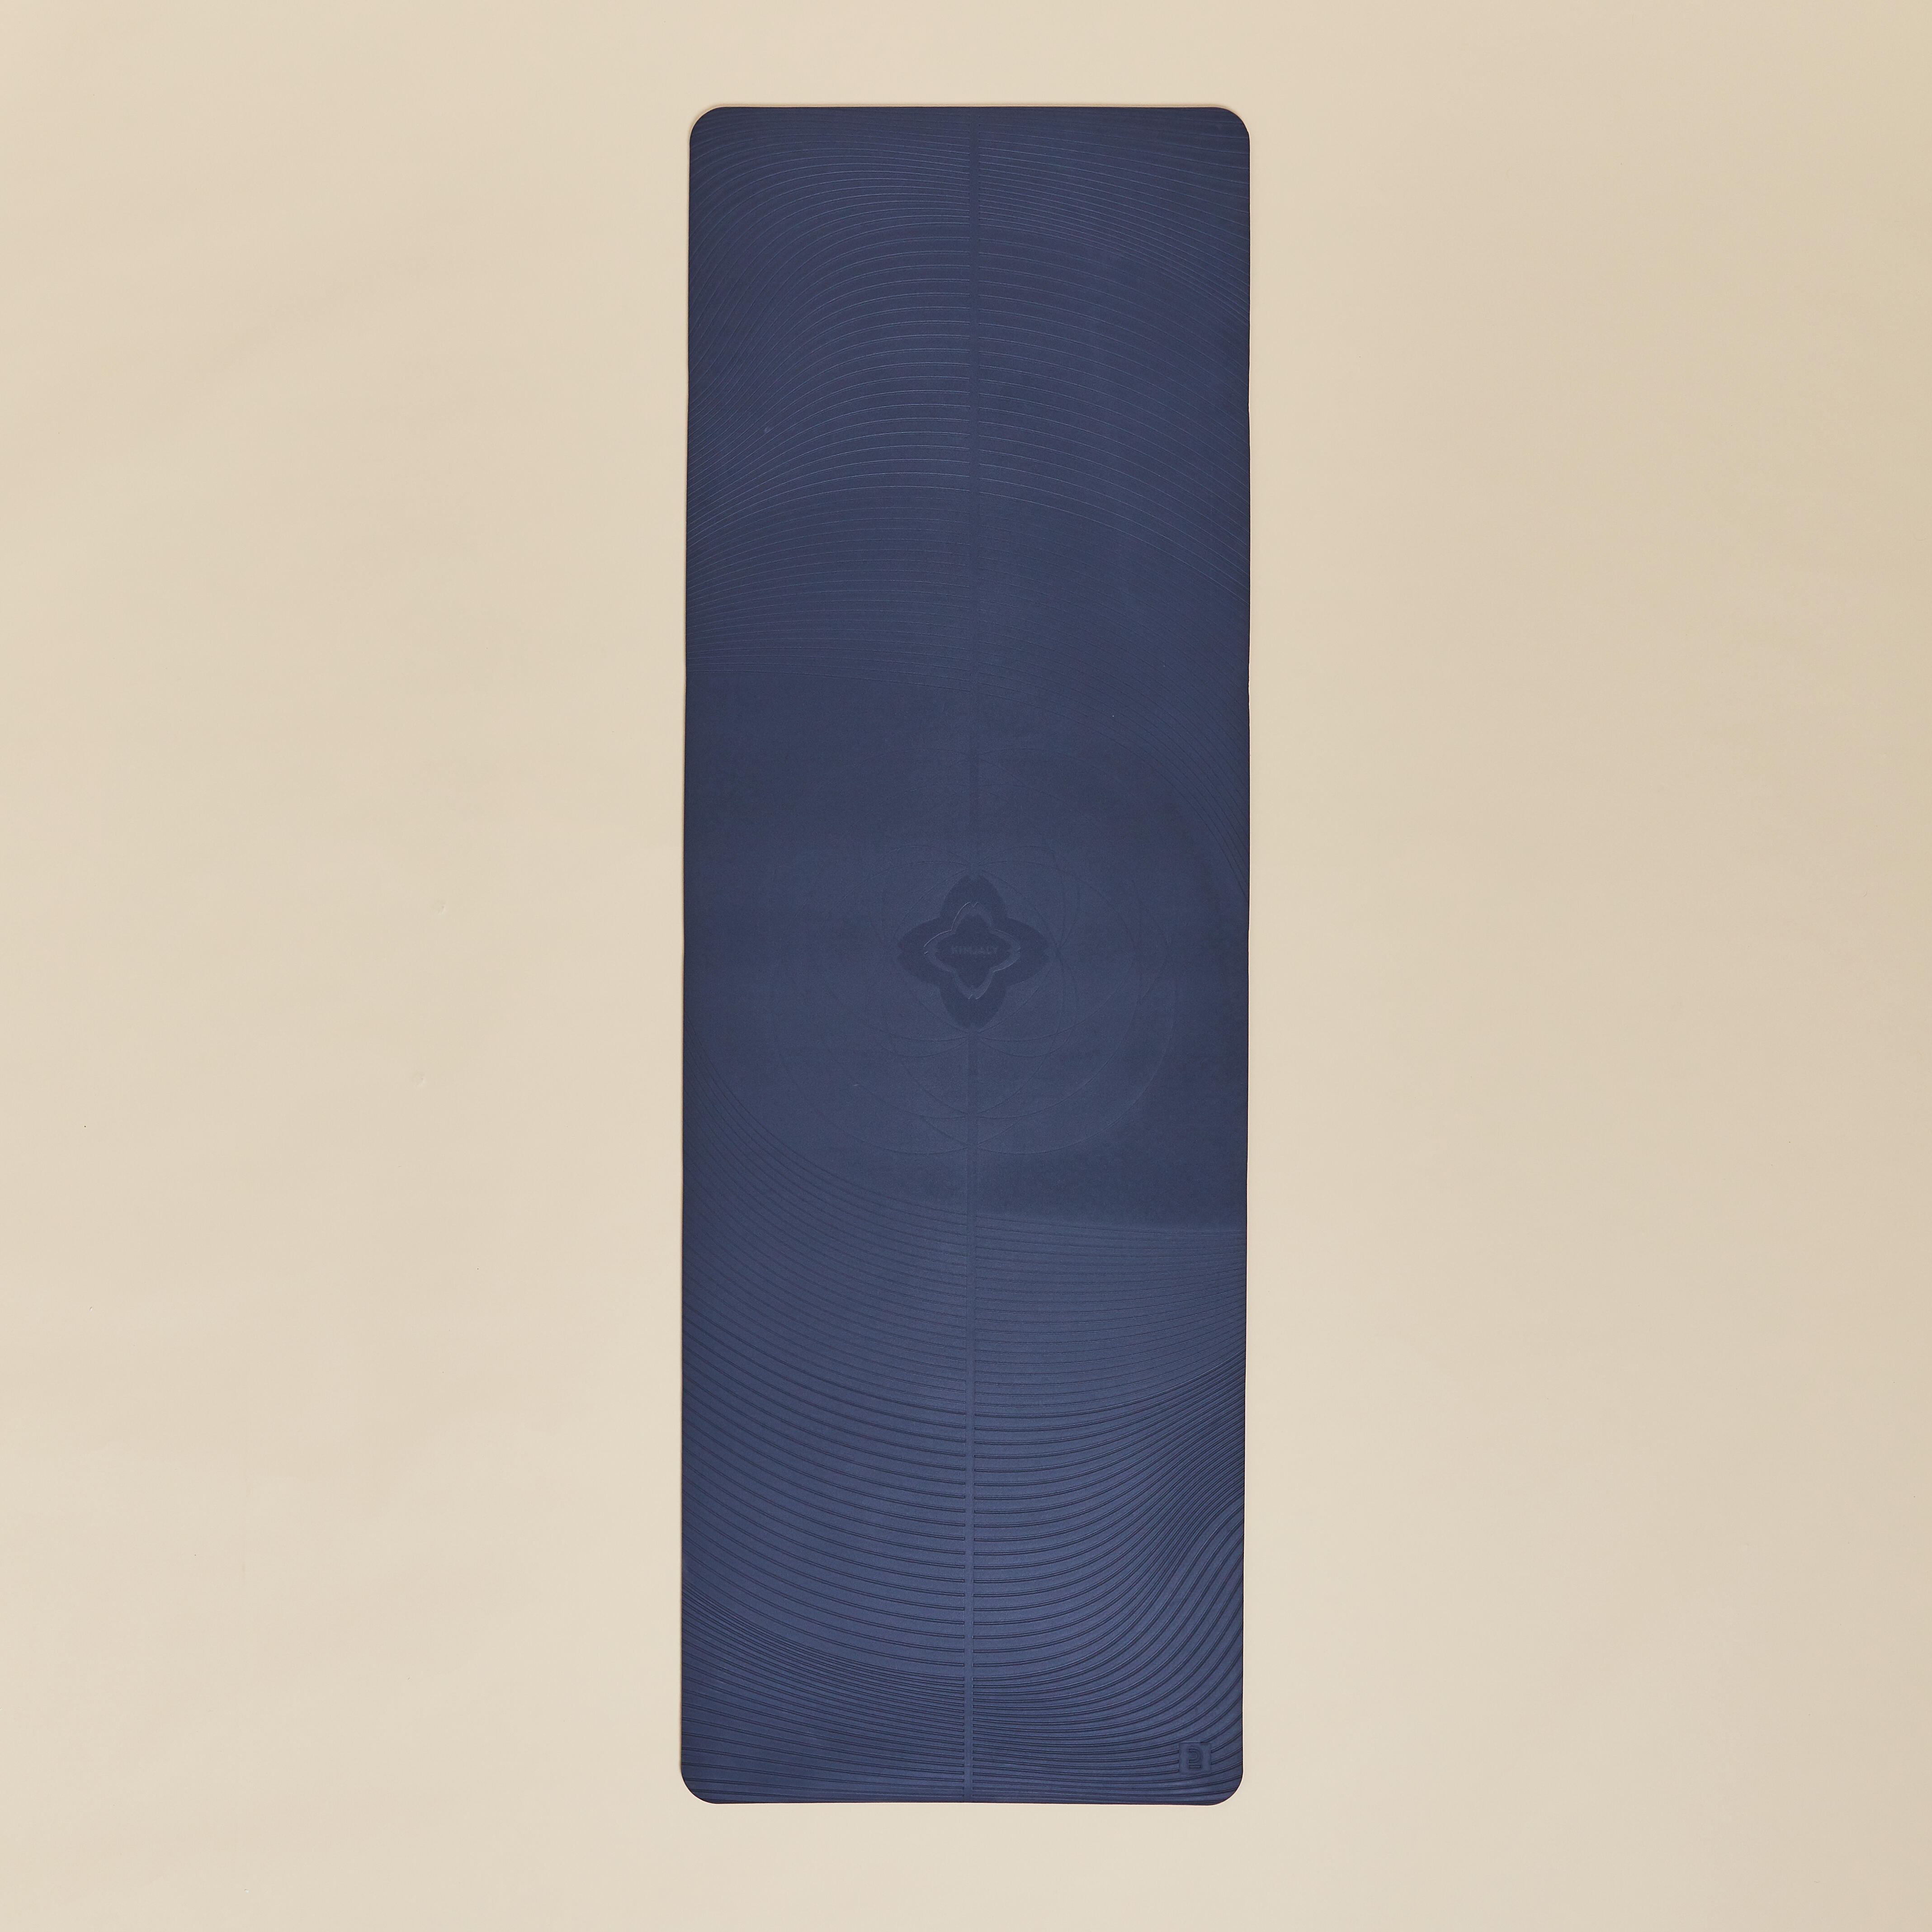 DOMYOS by Decathlon Light Gentle Yoga Mat Club 5 mm - Navy Blue 5